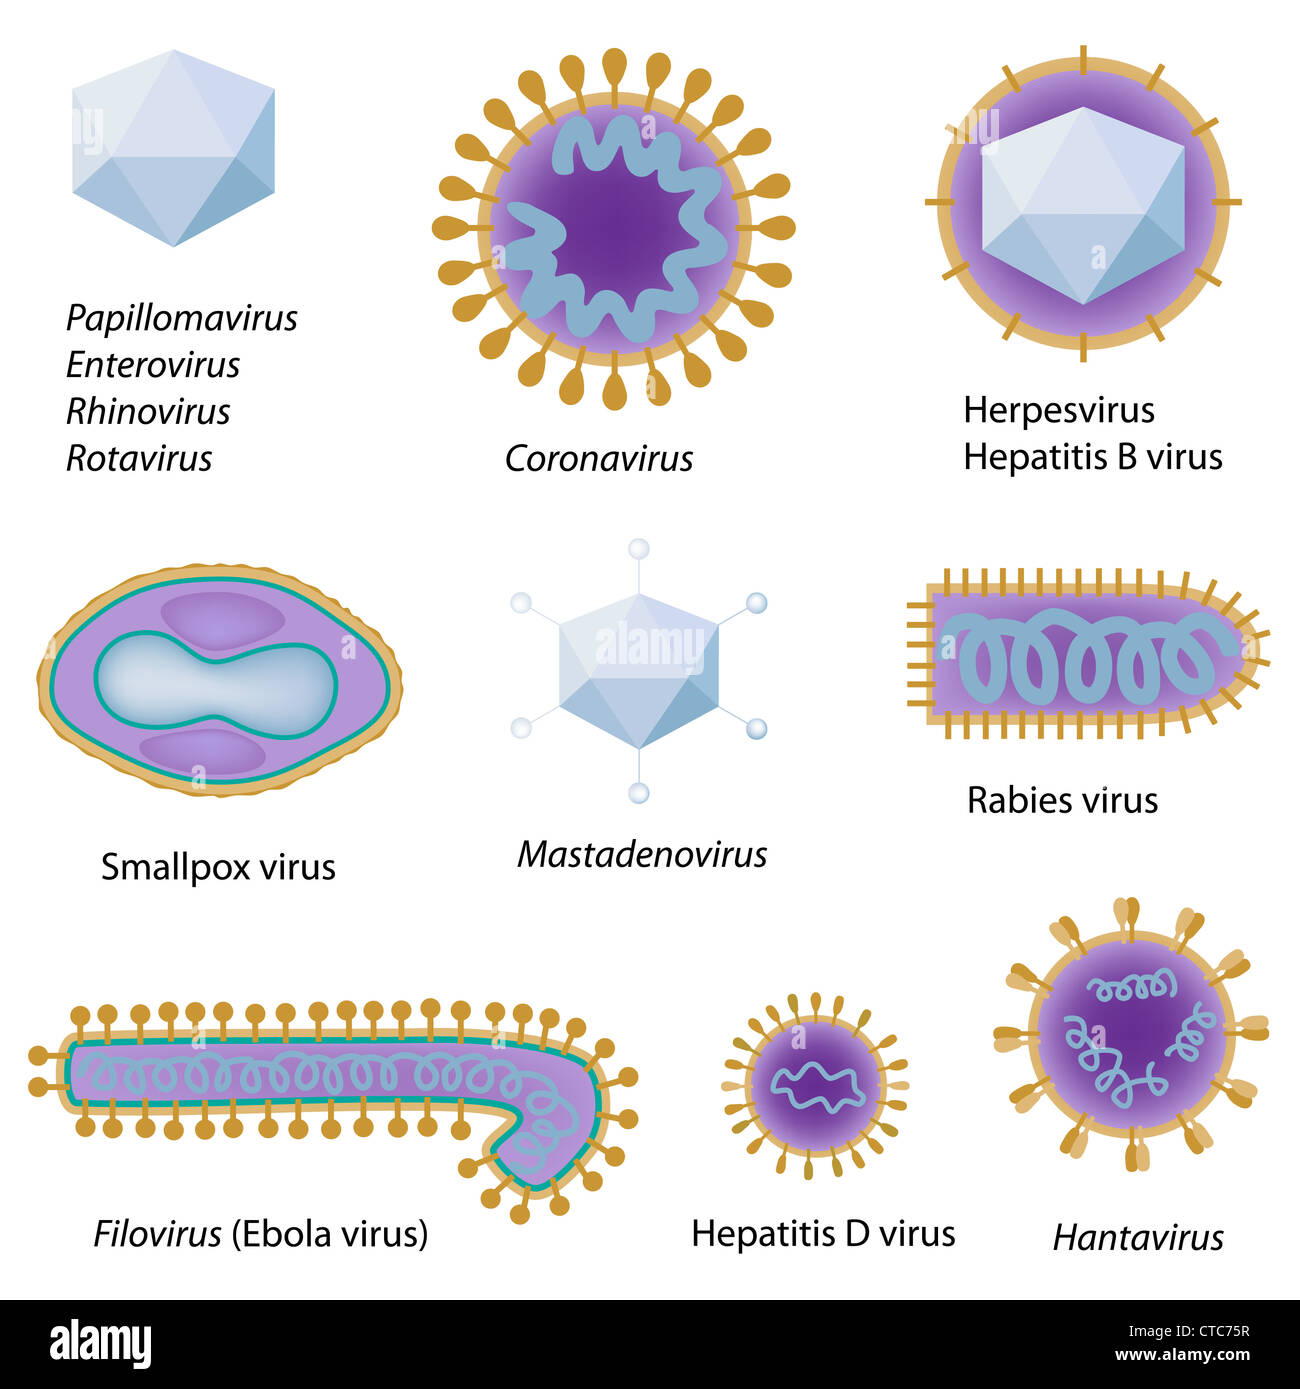 Morfología De Los Virus Comunes Fotografía De Stock Alamy | Free ...